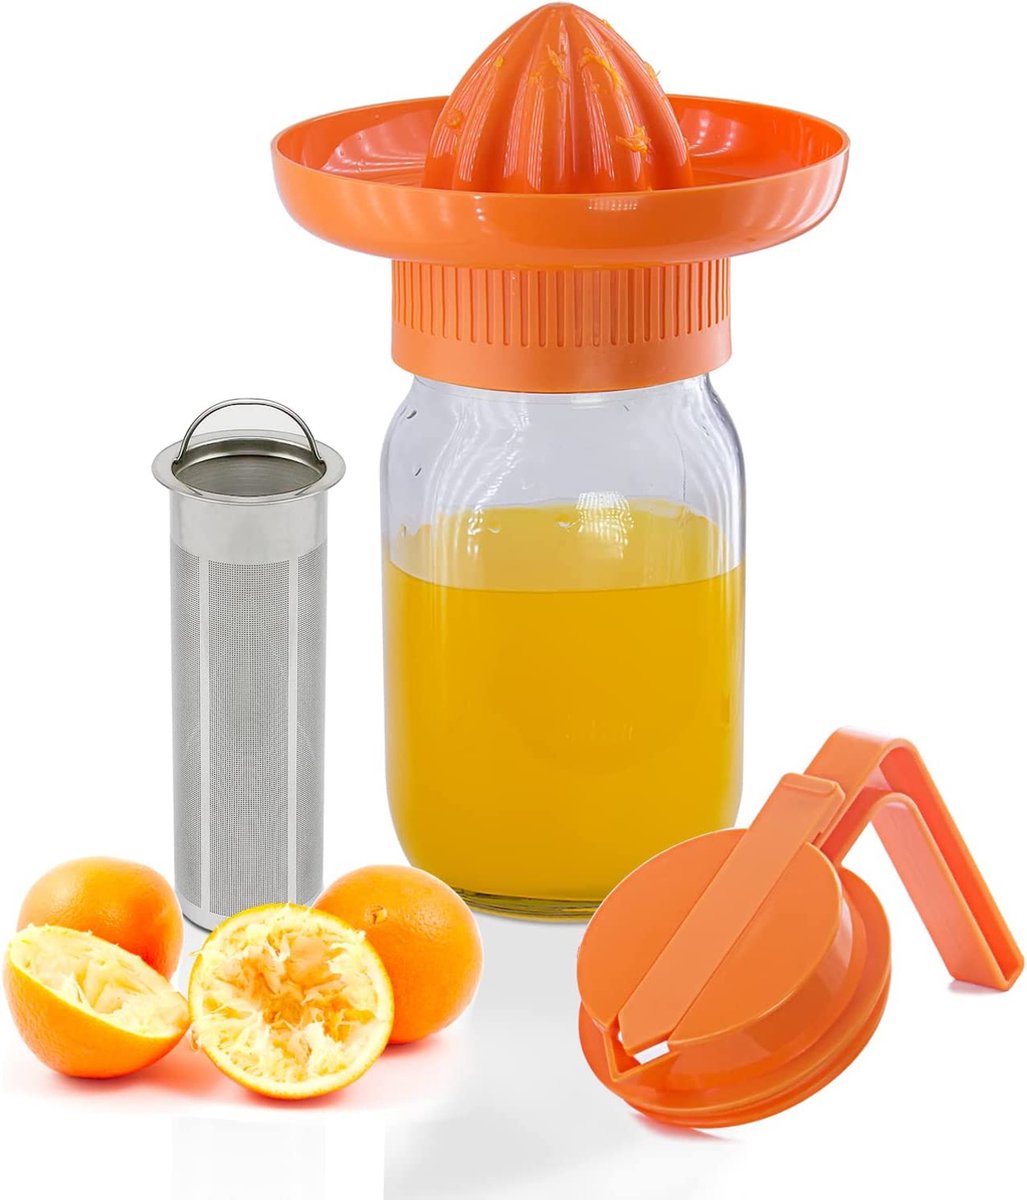 Handmatige citroenpers citruspers, 2-in-1 limoenpers, koffiemaker voor koude brouwen